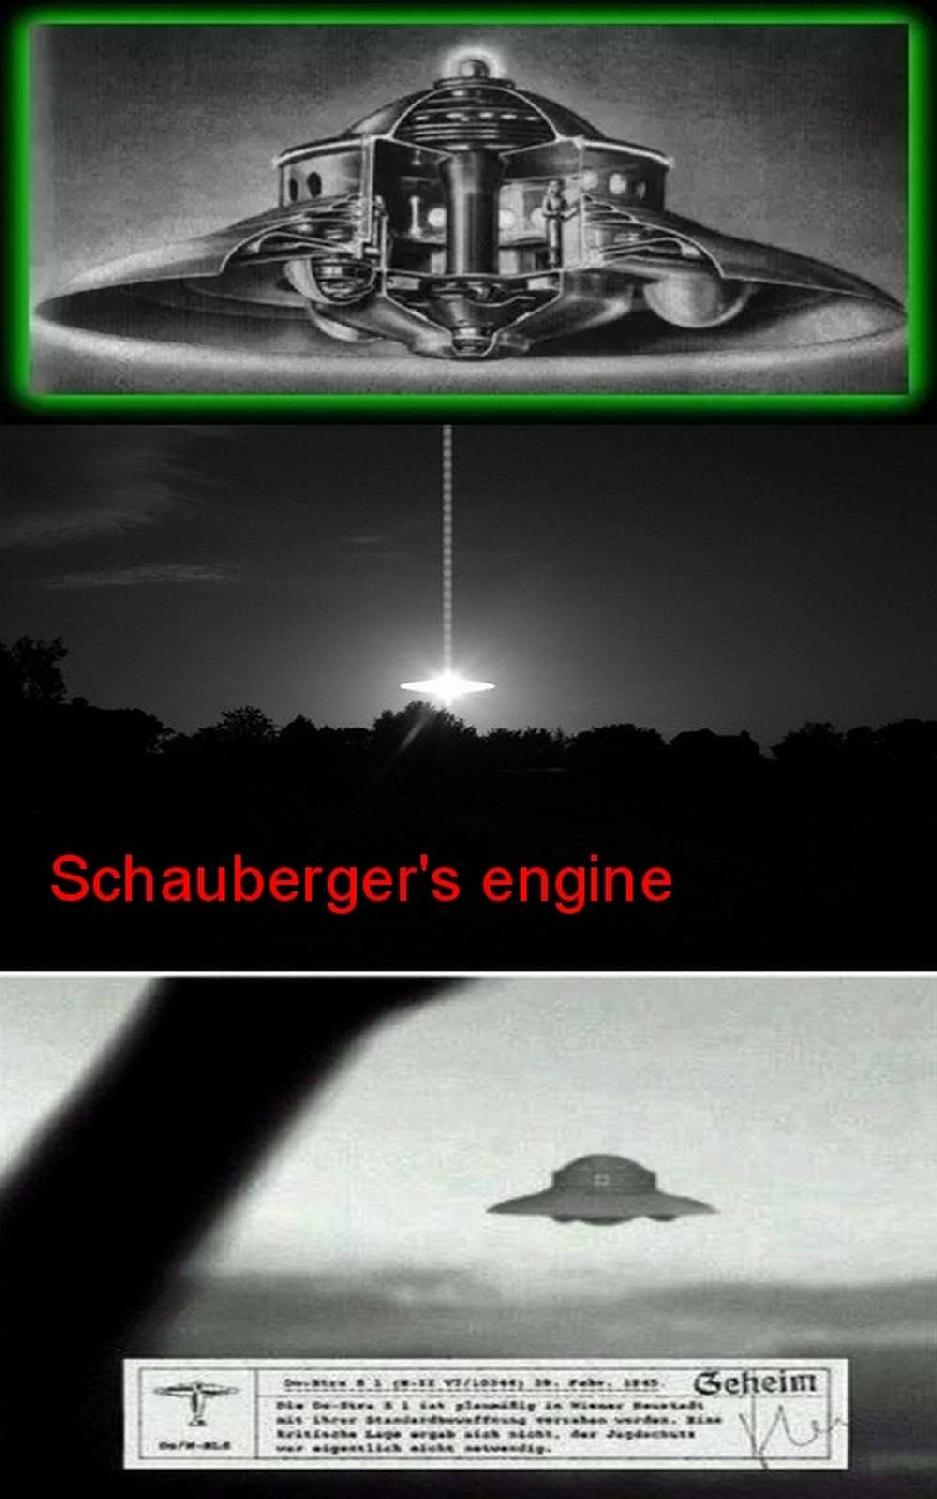 Schauberger's engine